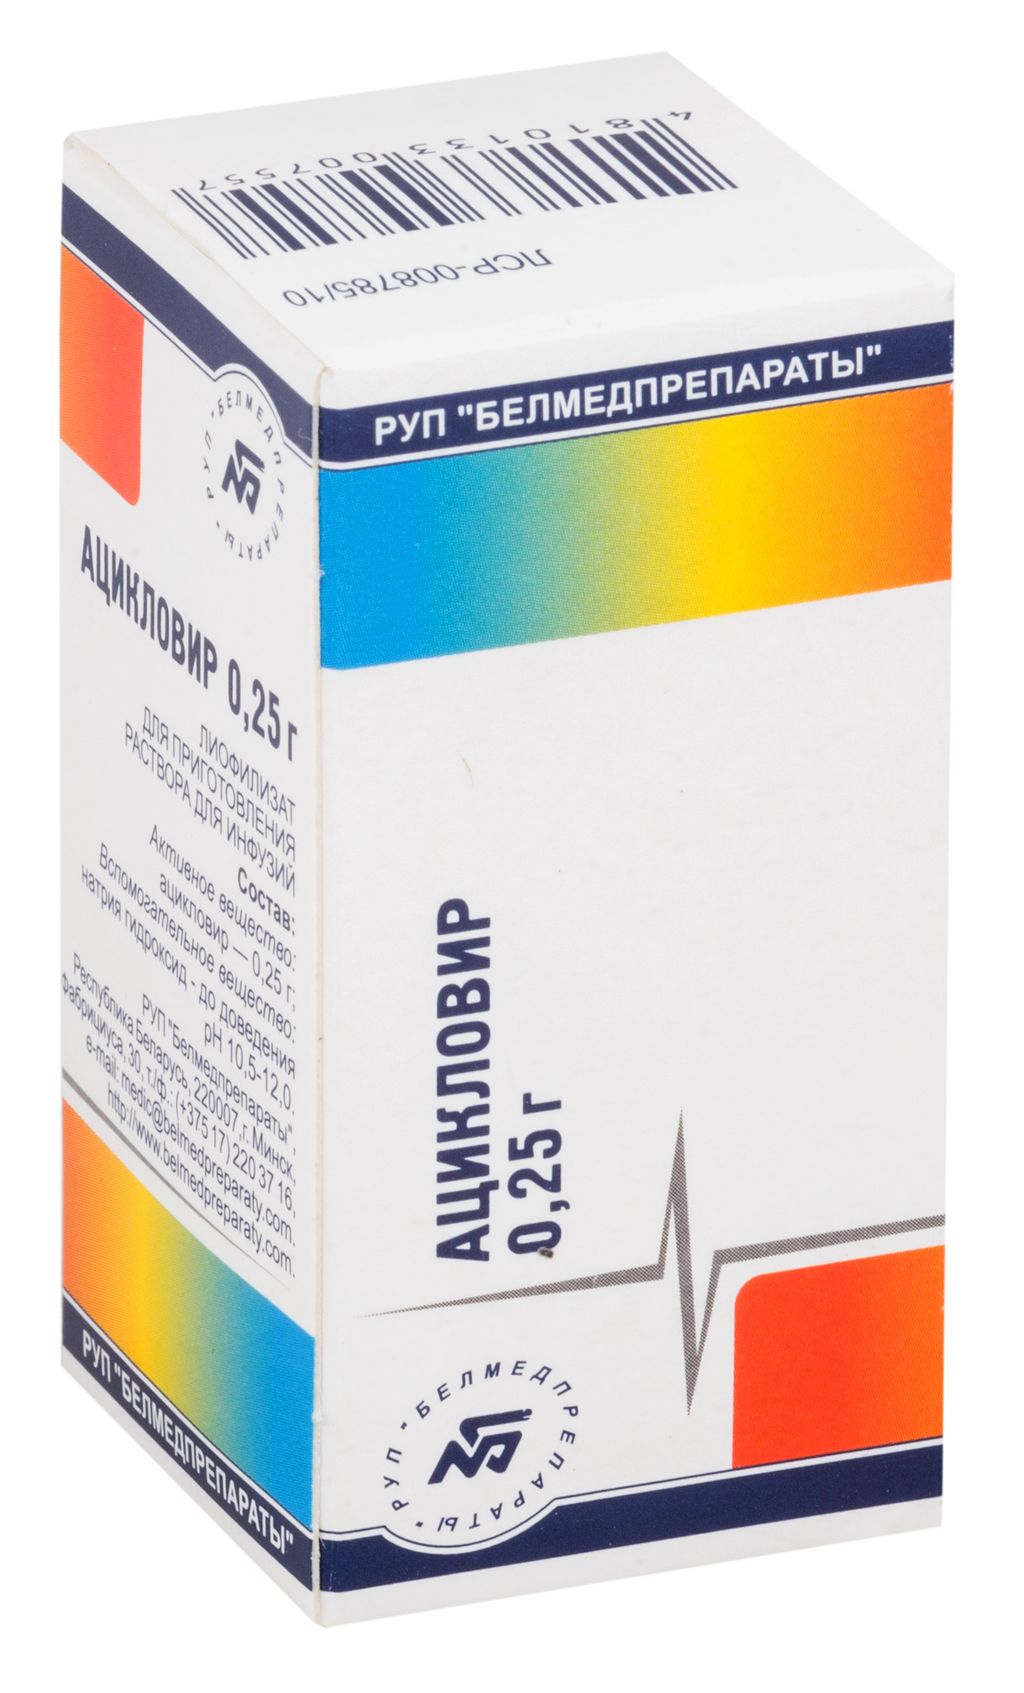 Ацикловир, 0.25 г, лиофилизат для приготовления раствора для инфузий, 1 шт.